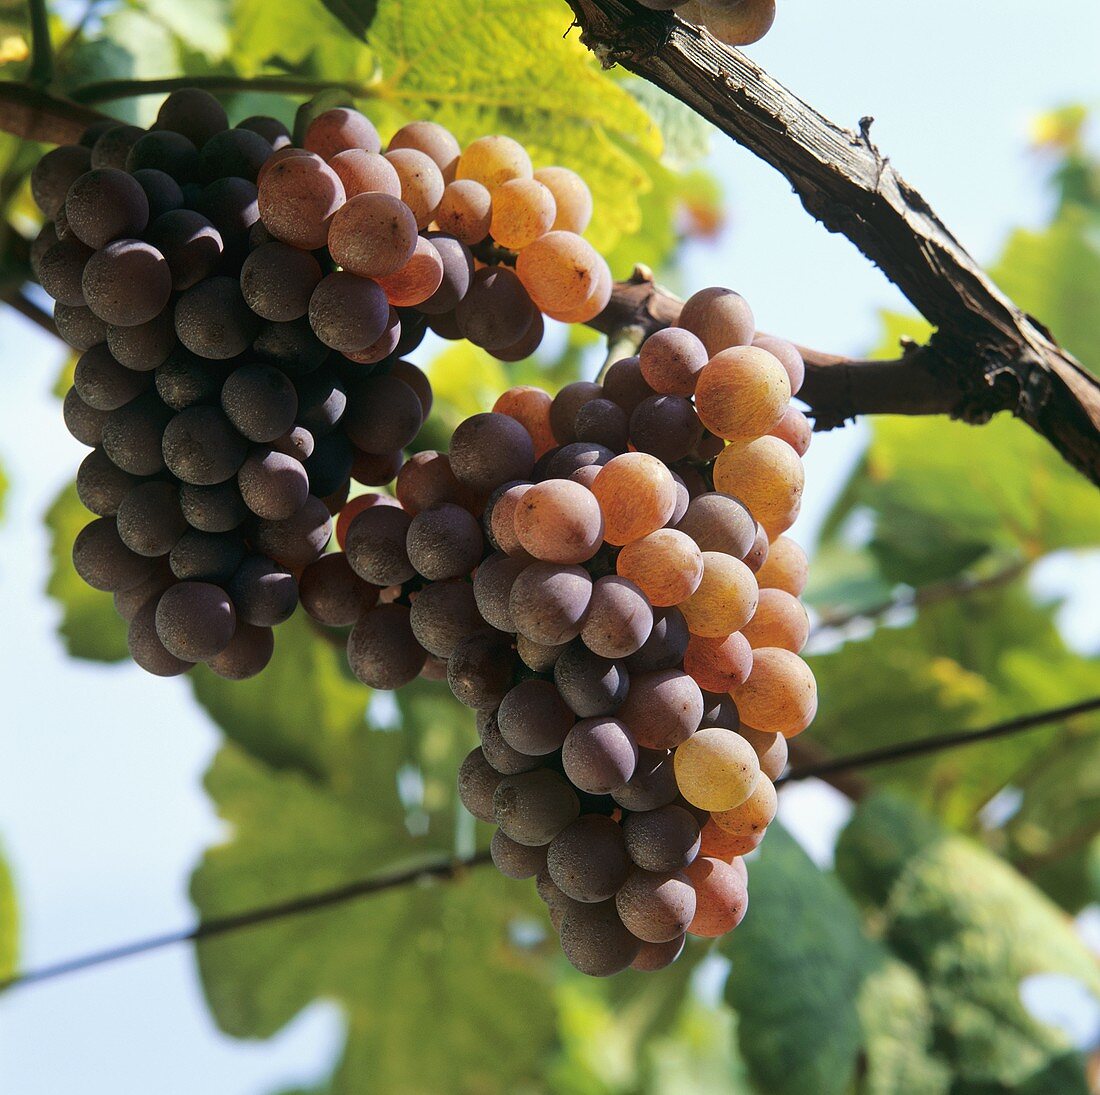 Gewürztraminer grapes on the vine, Tramin, S. Tyrol